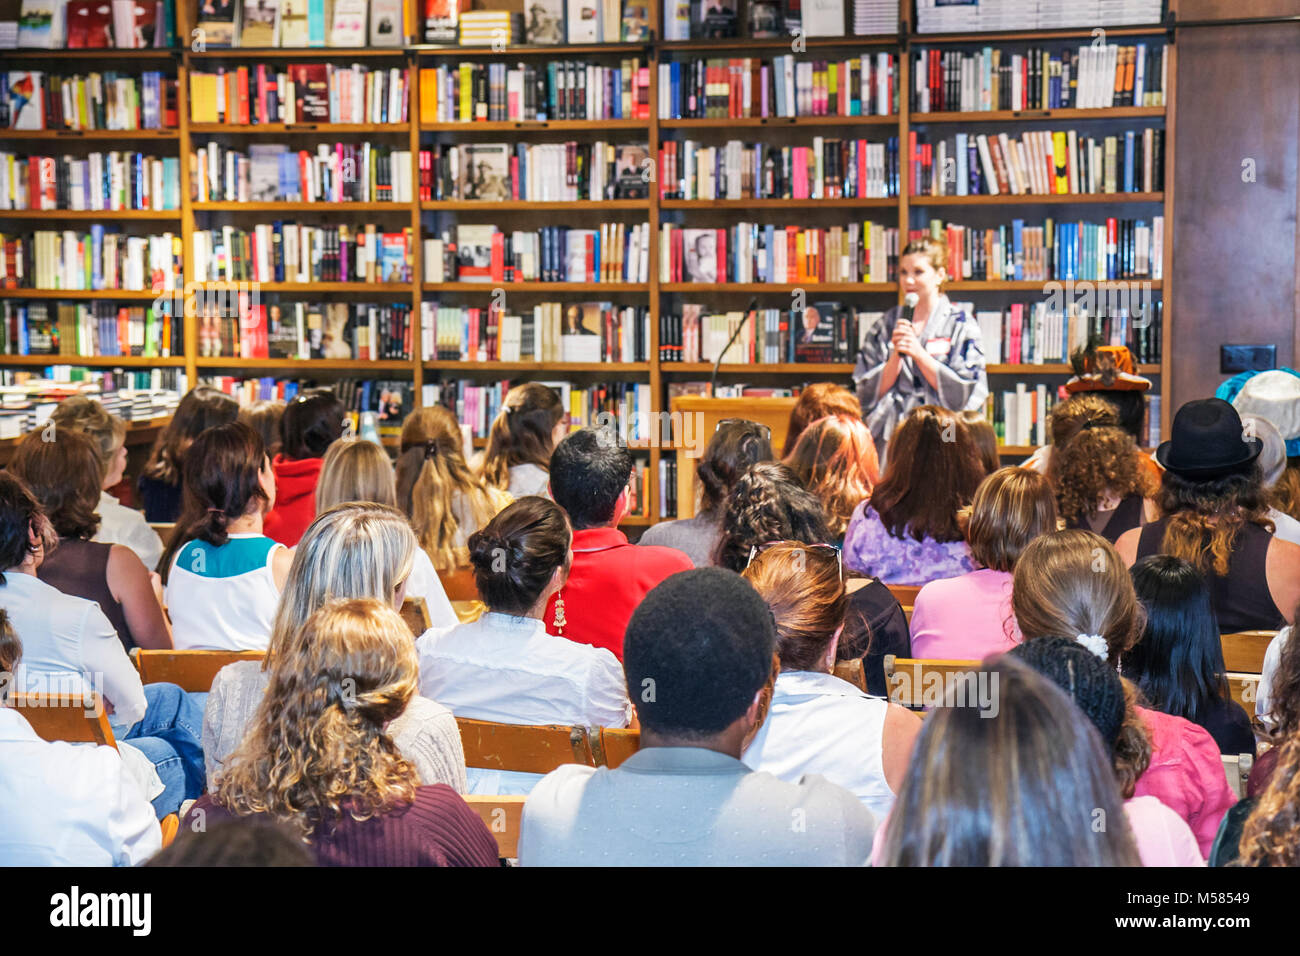 Miami Florida,Coral Gables,Livres & Livres,rencontrez les auteurs,Libba Bray,Shannon Hale,jeunes auteurs de fiction adulte,littérature,organisateur,public,foule,woma Banque D'Images